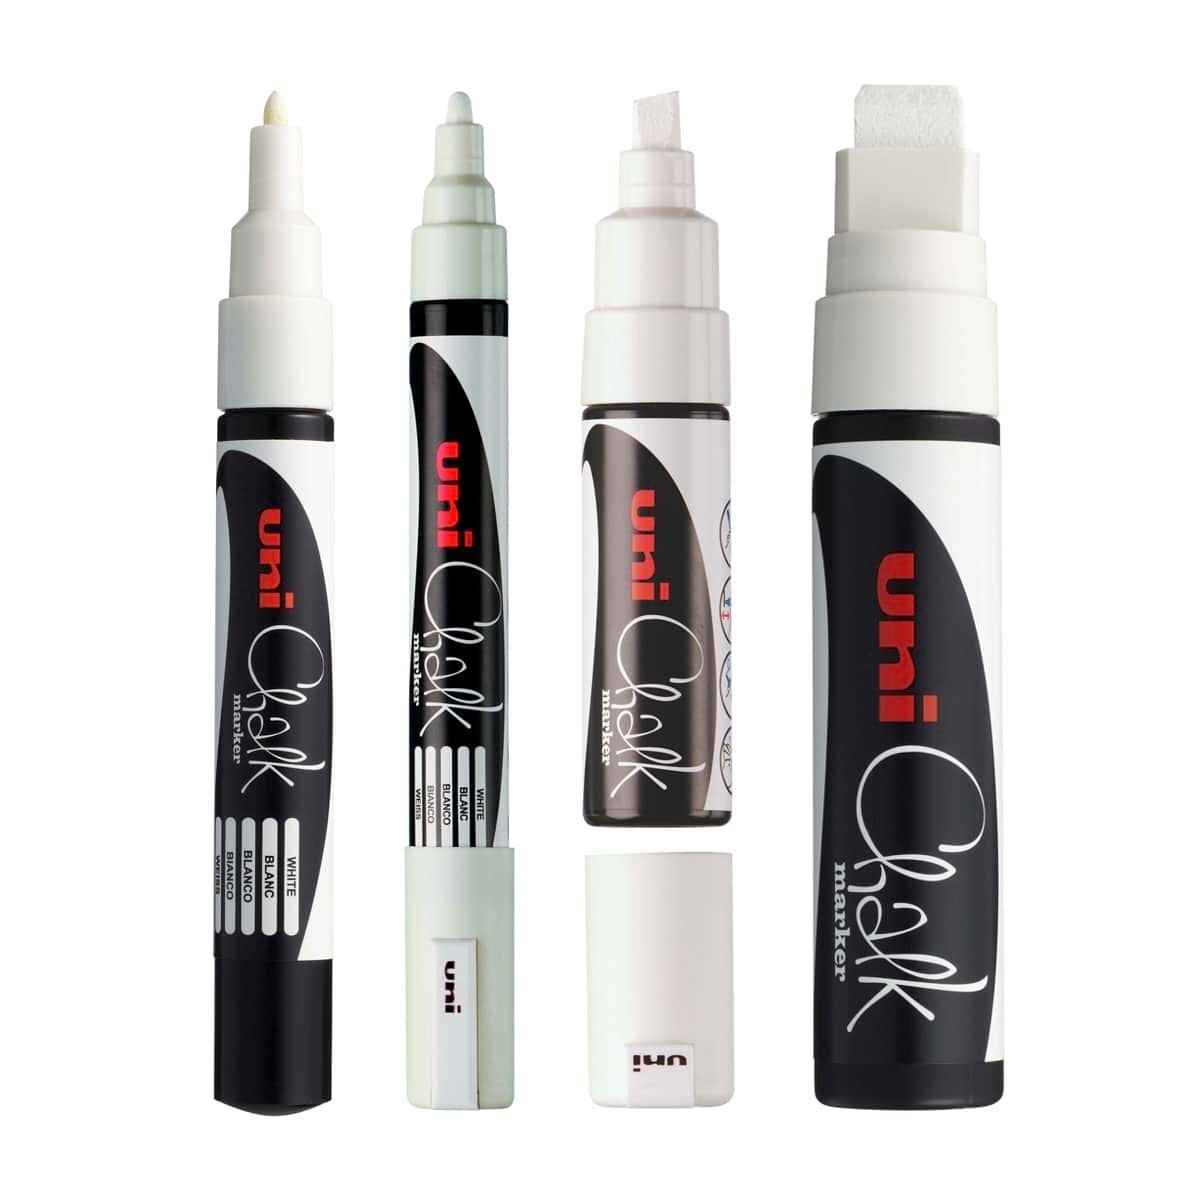 Uni Chalk Marker PWE-3M - marqueur craie liquide - pointe conique